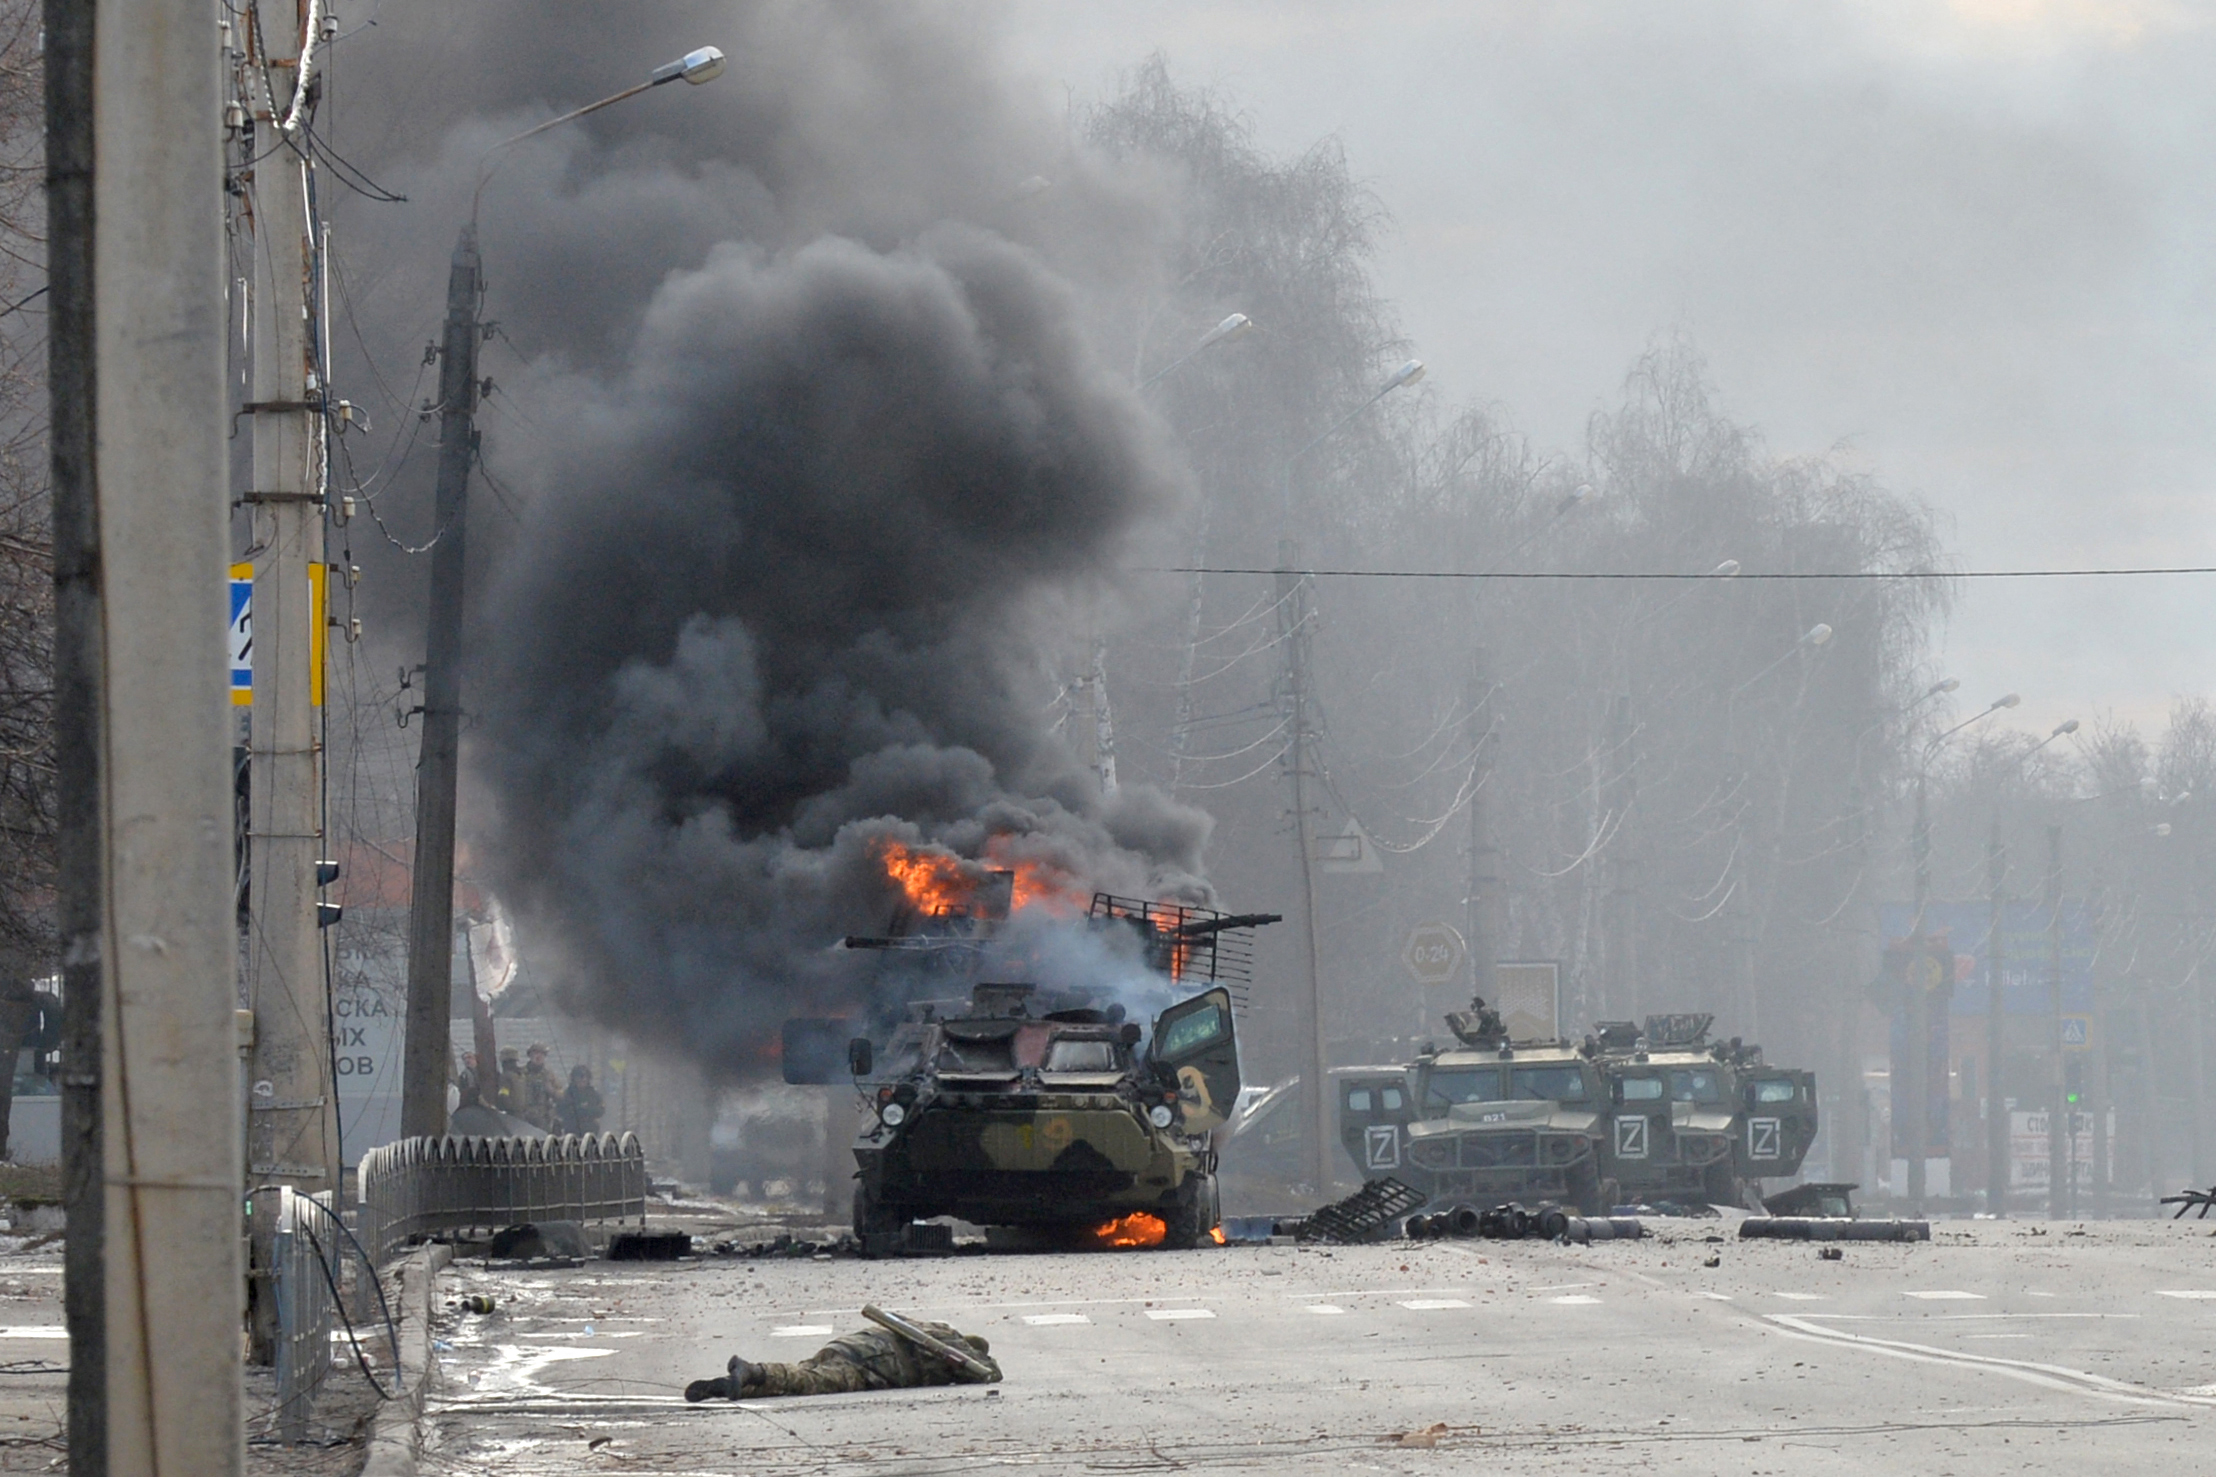 Bộ Quốc phòng Nga nói về tổn thất trong chiến dịch quân sự ở Ukraine